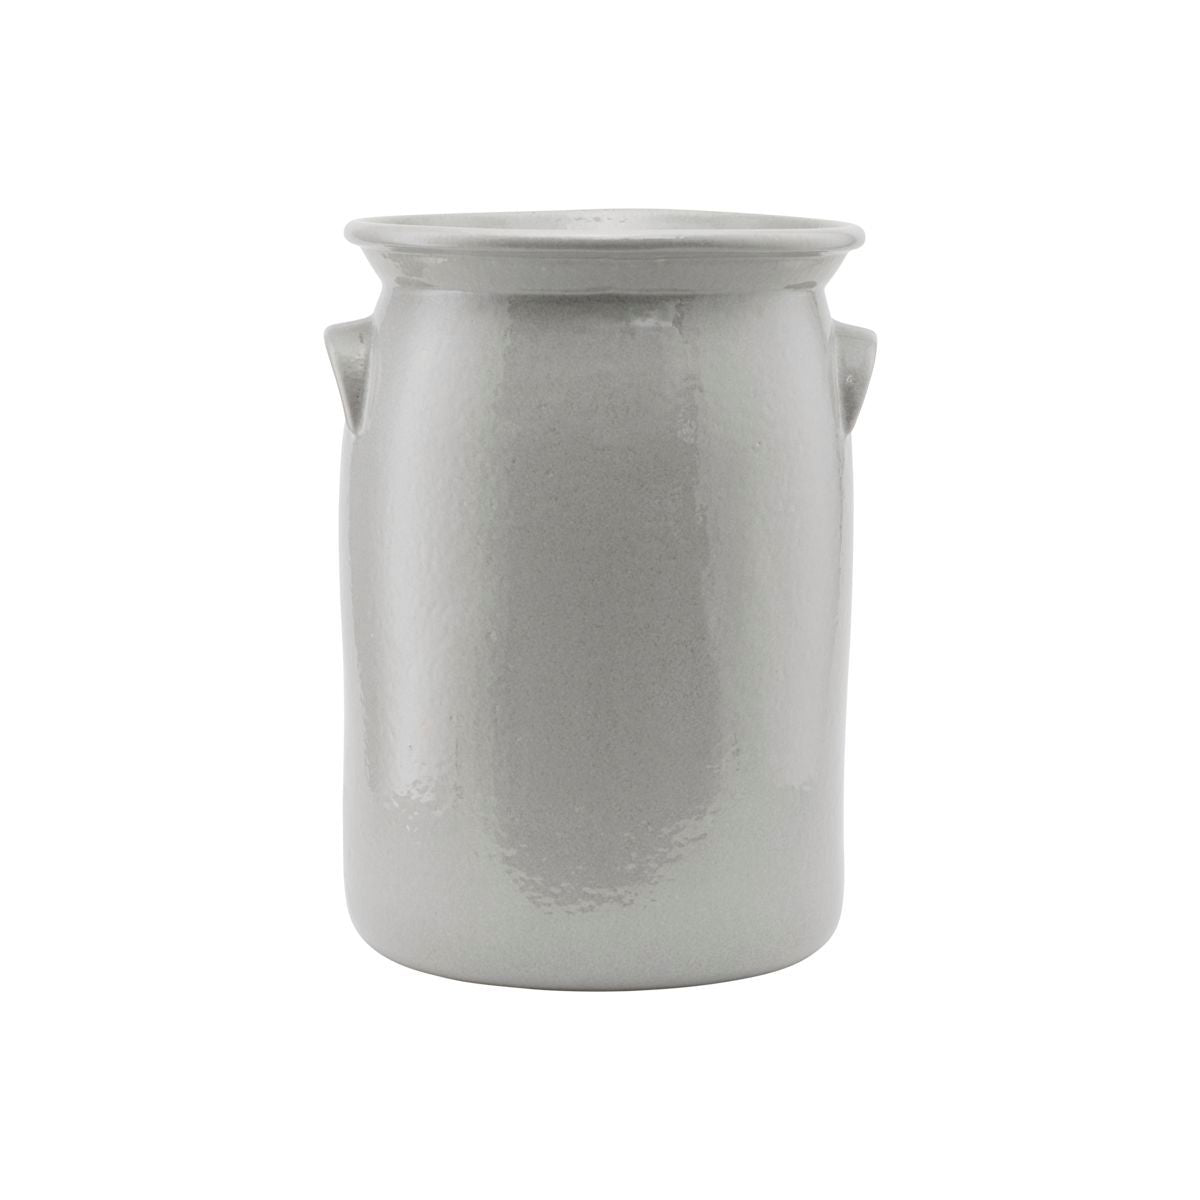 Meraki Keramikkrukke, Shellish grey - 36x25 cm